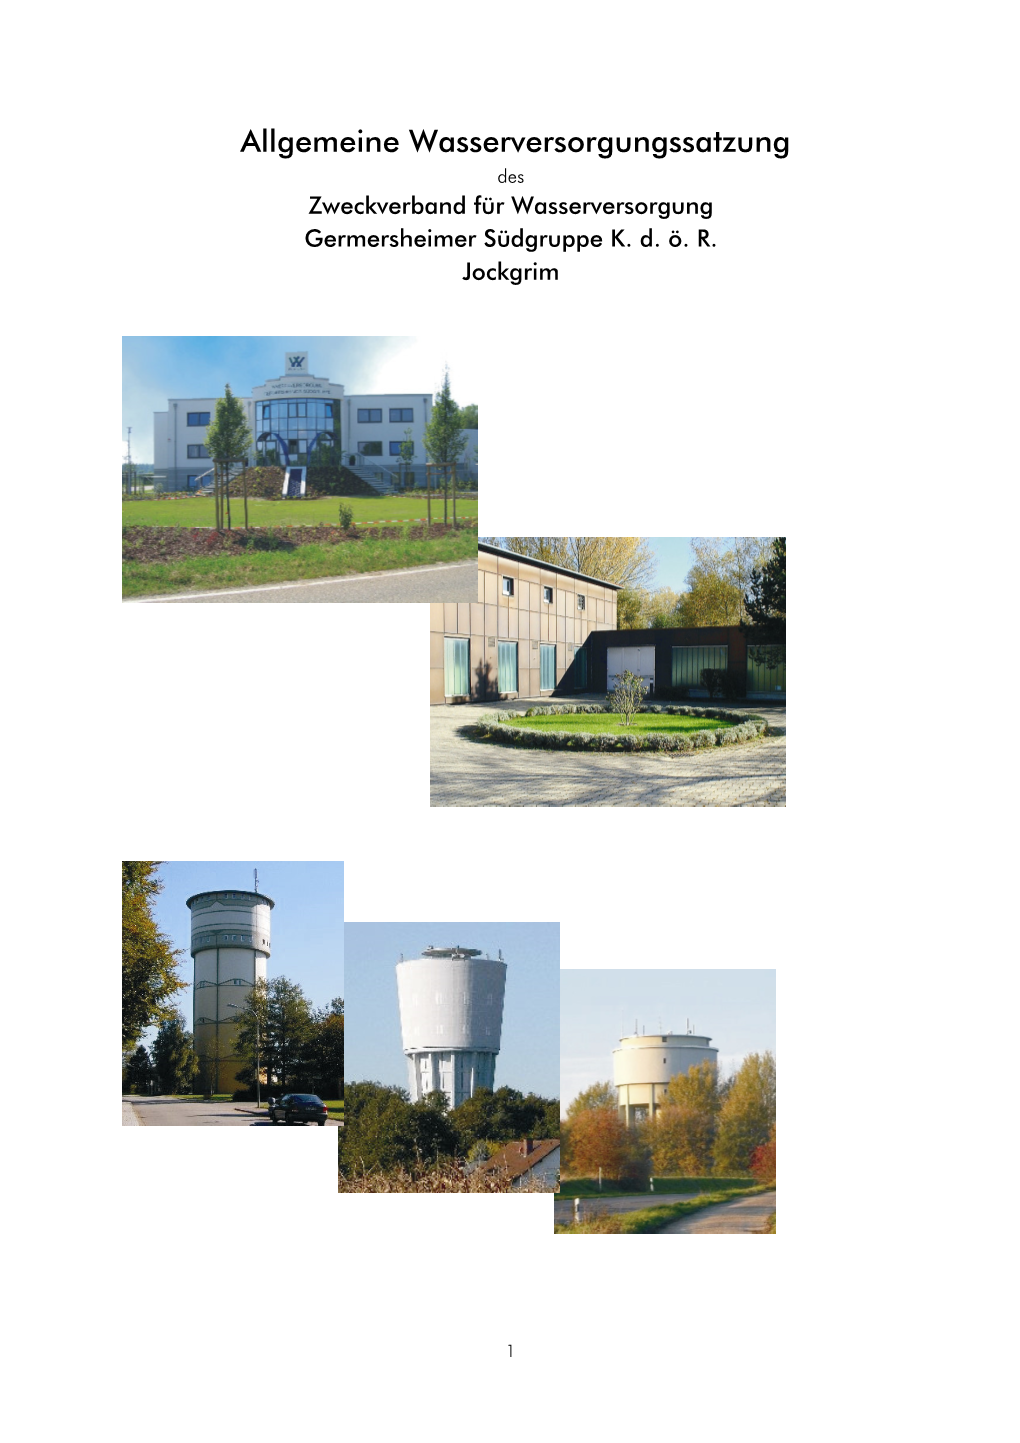 Allgemeine Wasserversorgungssatzung Des Zweckverband Für Wasserversorgung Germersheimer Südgruppe K